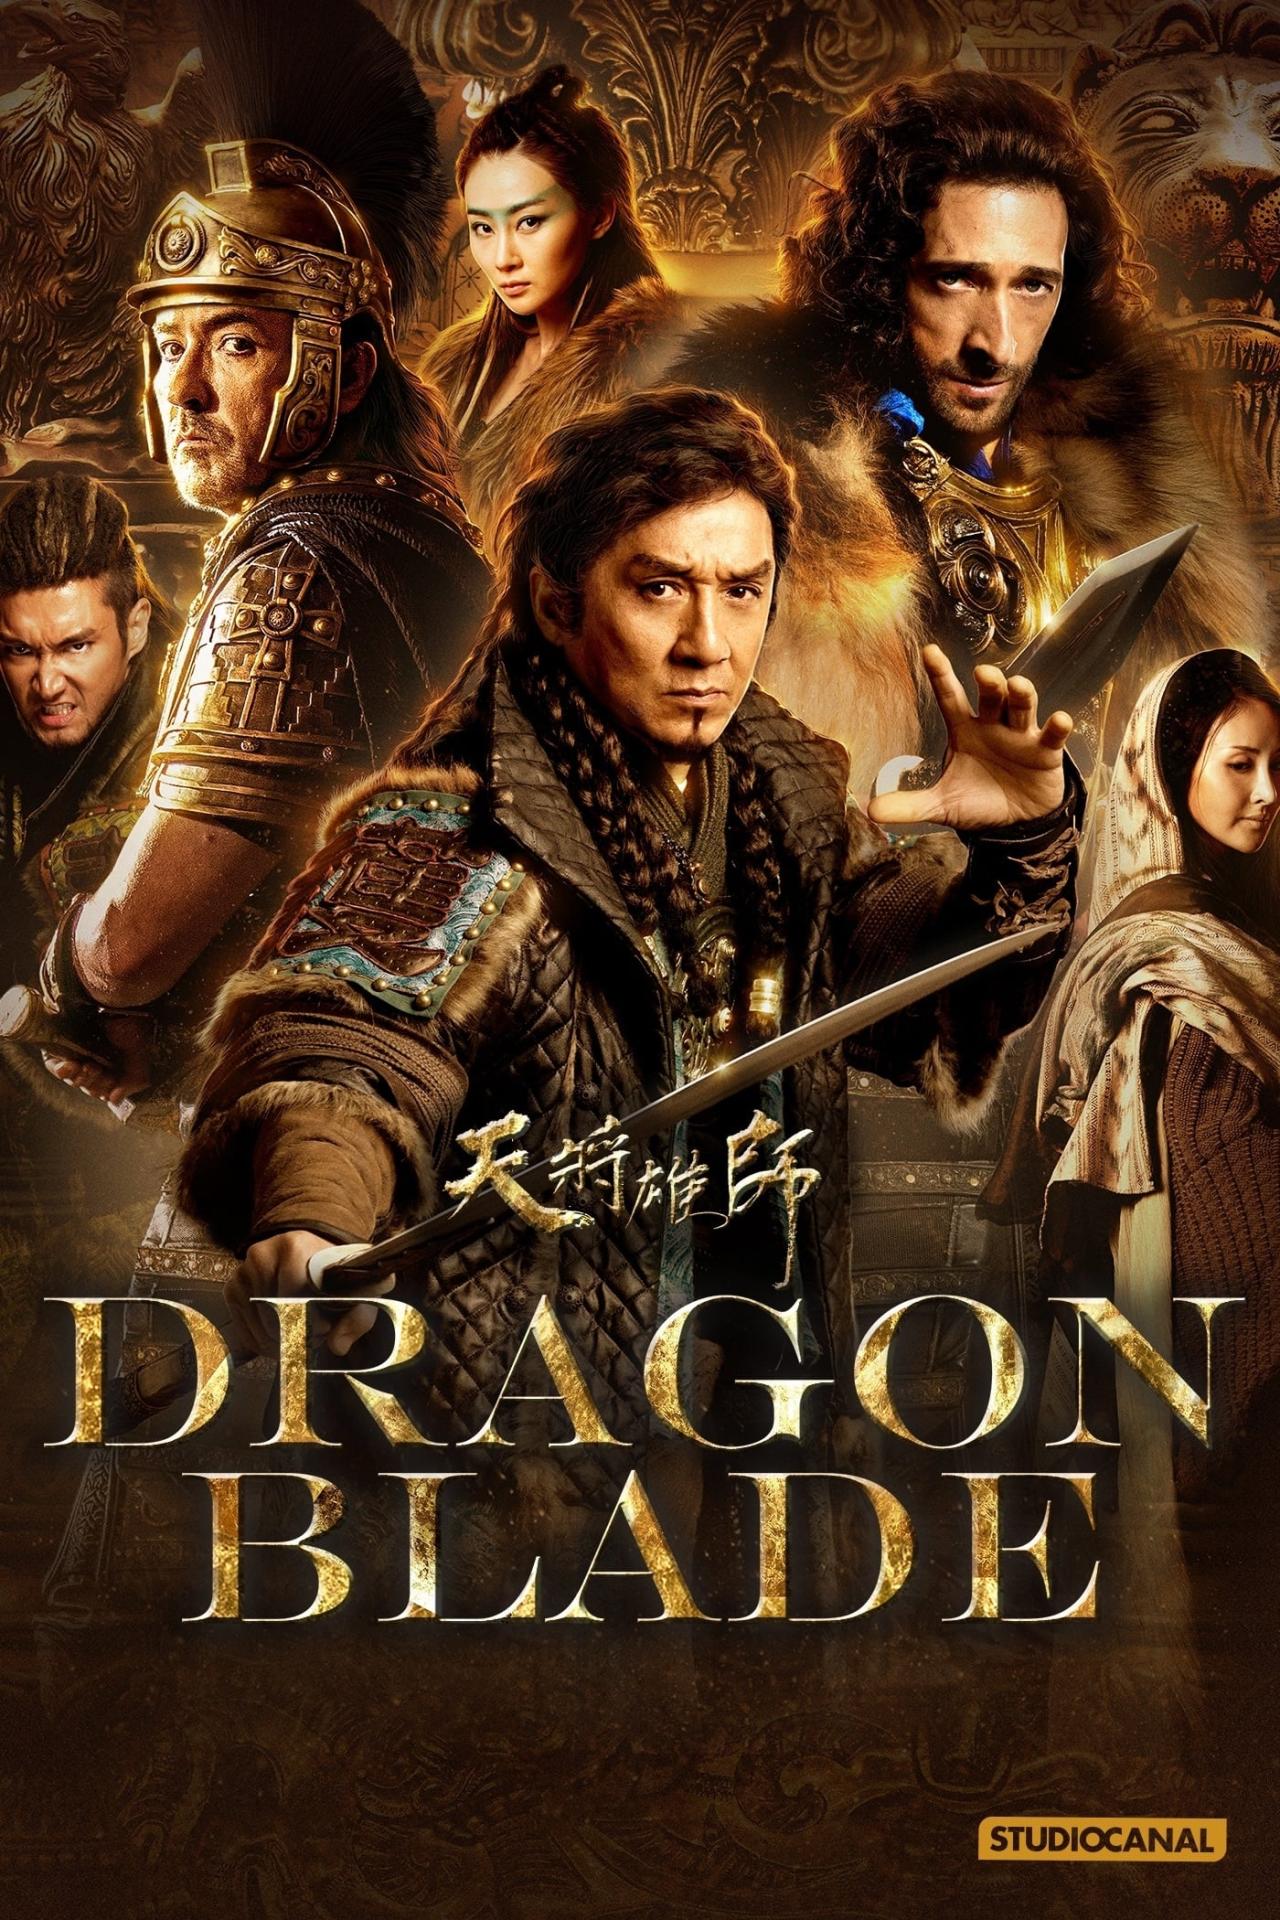 Affiche du film Dragon Blade